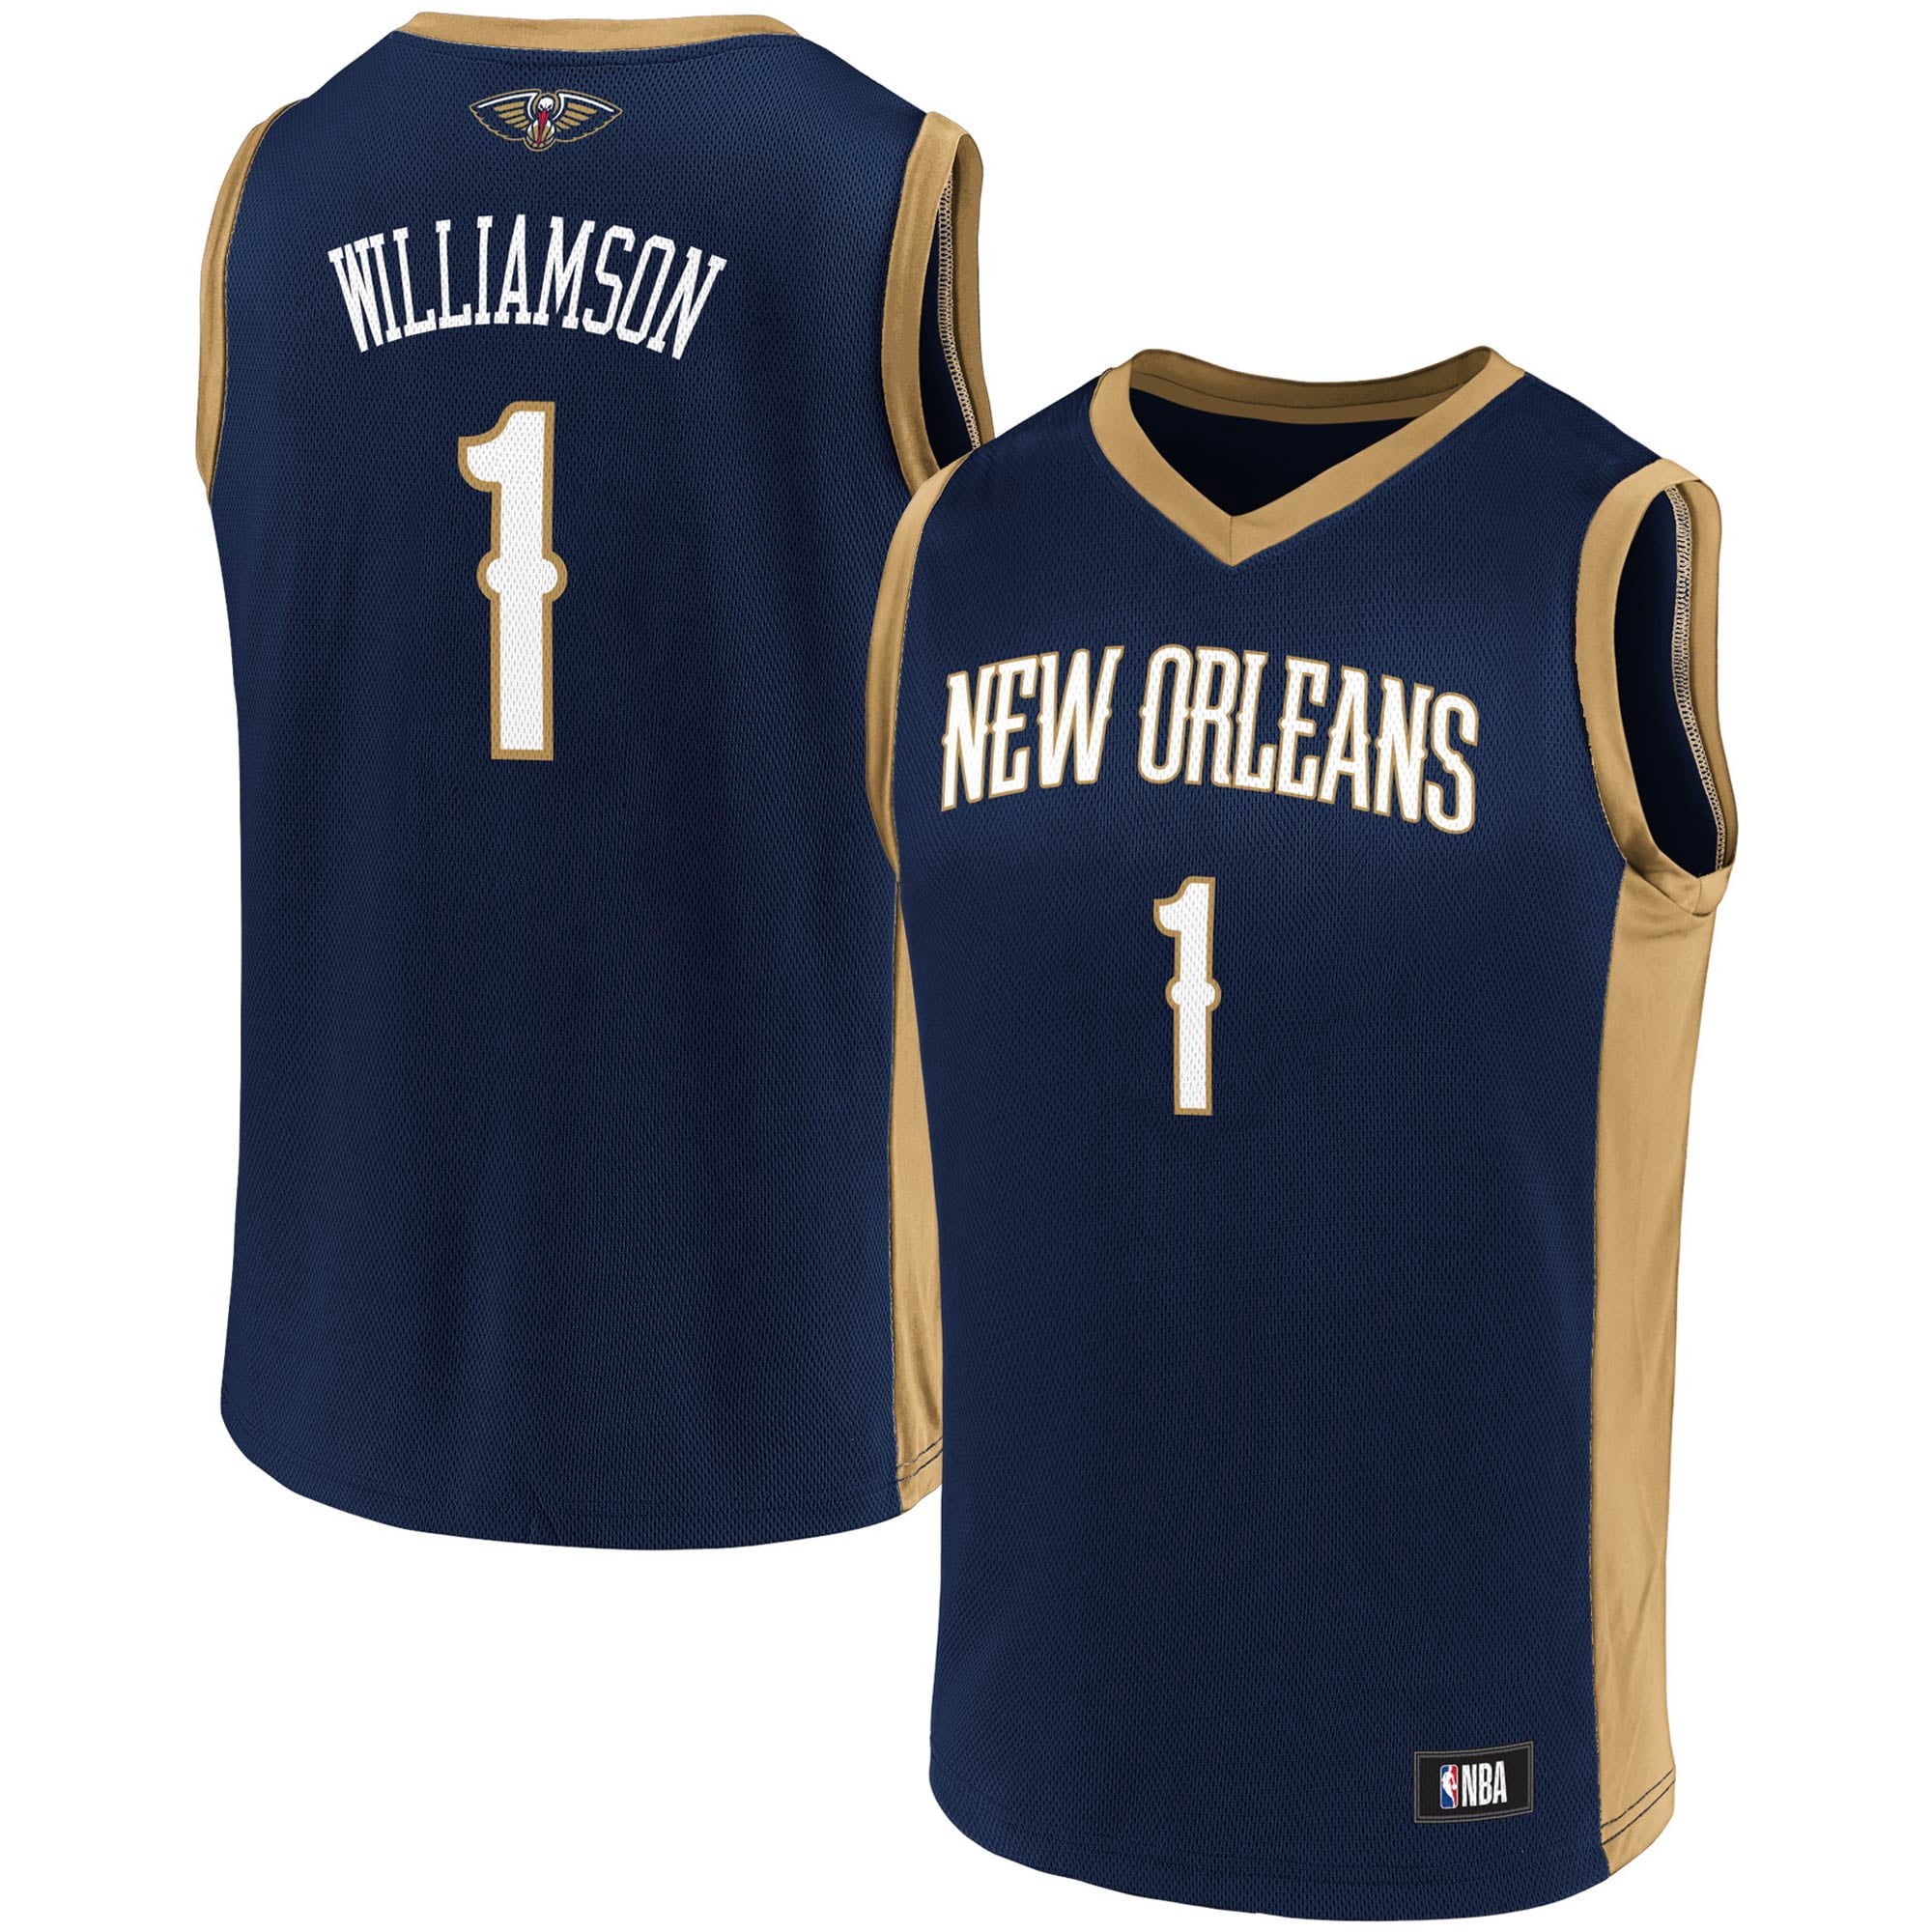 New Orleans Pelicans Jerseys & Gear.